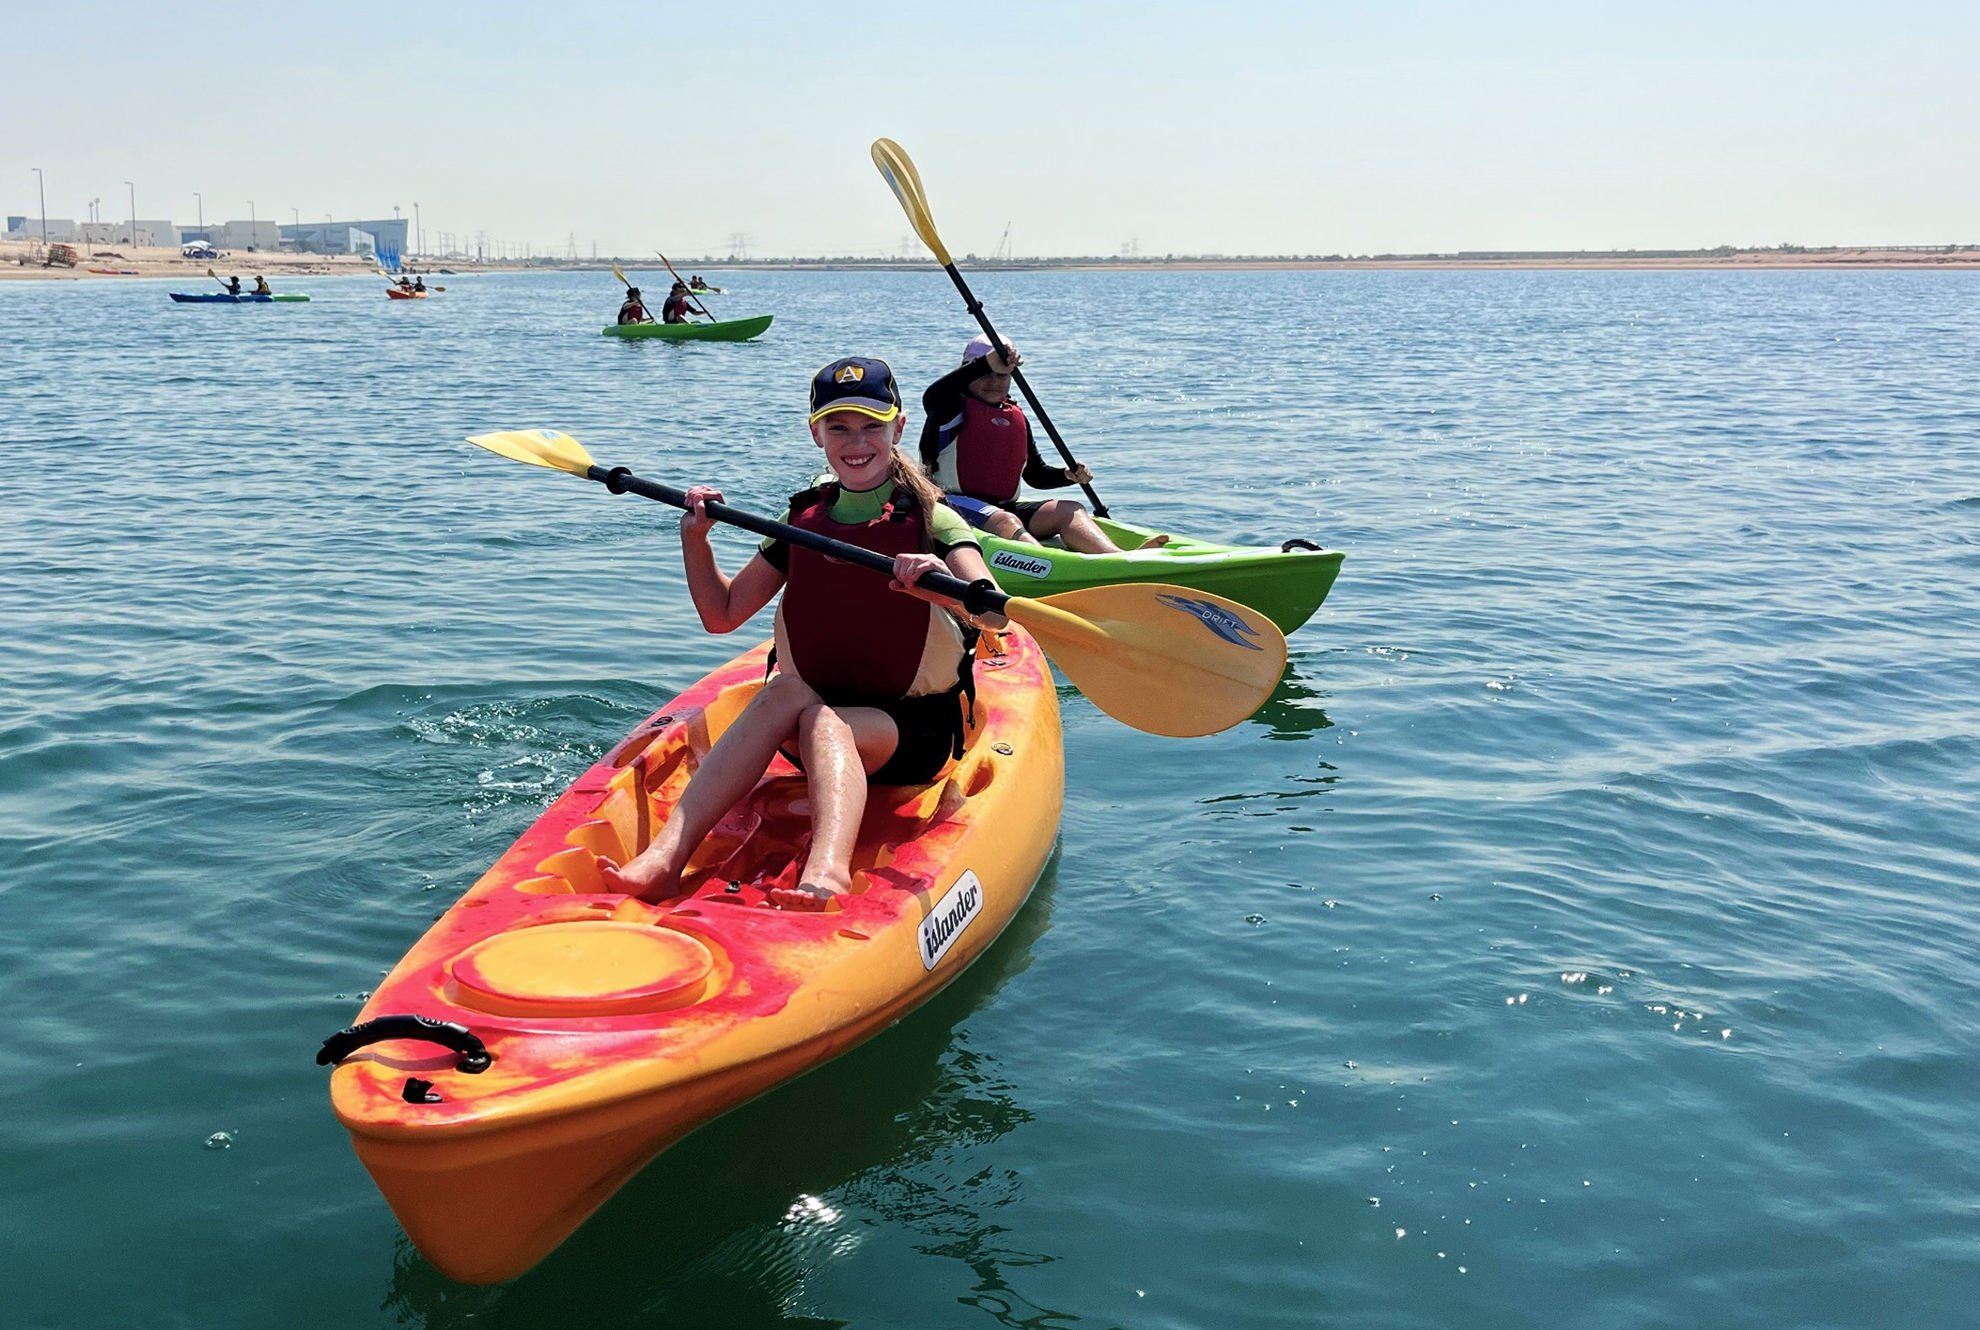 Wassersport ist ein starkes Alleinstellungsmerkmal der Amity International School Abu Dhabi, wo erhebliche Investitionen in wasserbasierte Aktivitäten für ganze Kinder getätigt werden, vom Segeln bis zum Kanufahren (Bild).